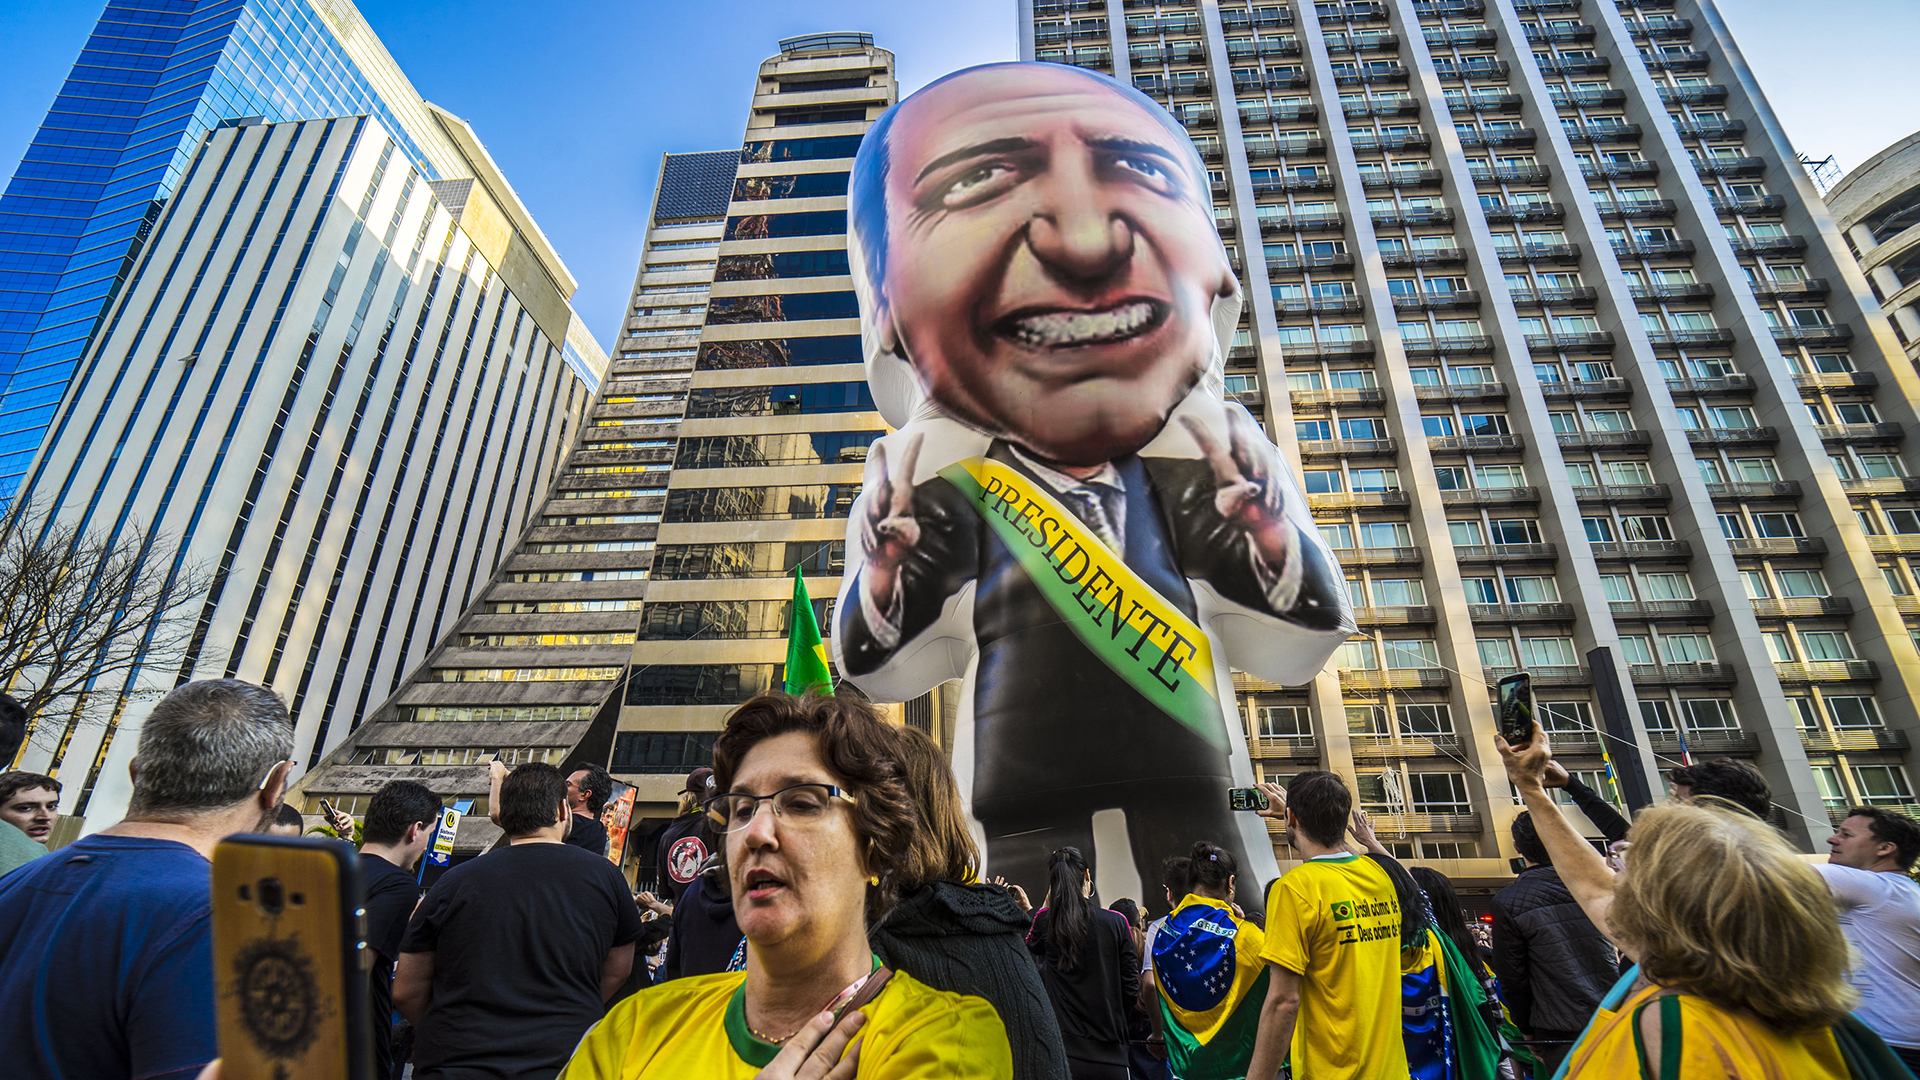 Unterstützer des Präsidentschaftskandidaten Bolsonaro rufen Parolen während einer Kundgebung.  | dpa